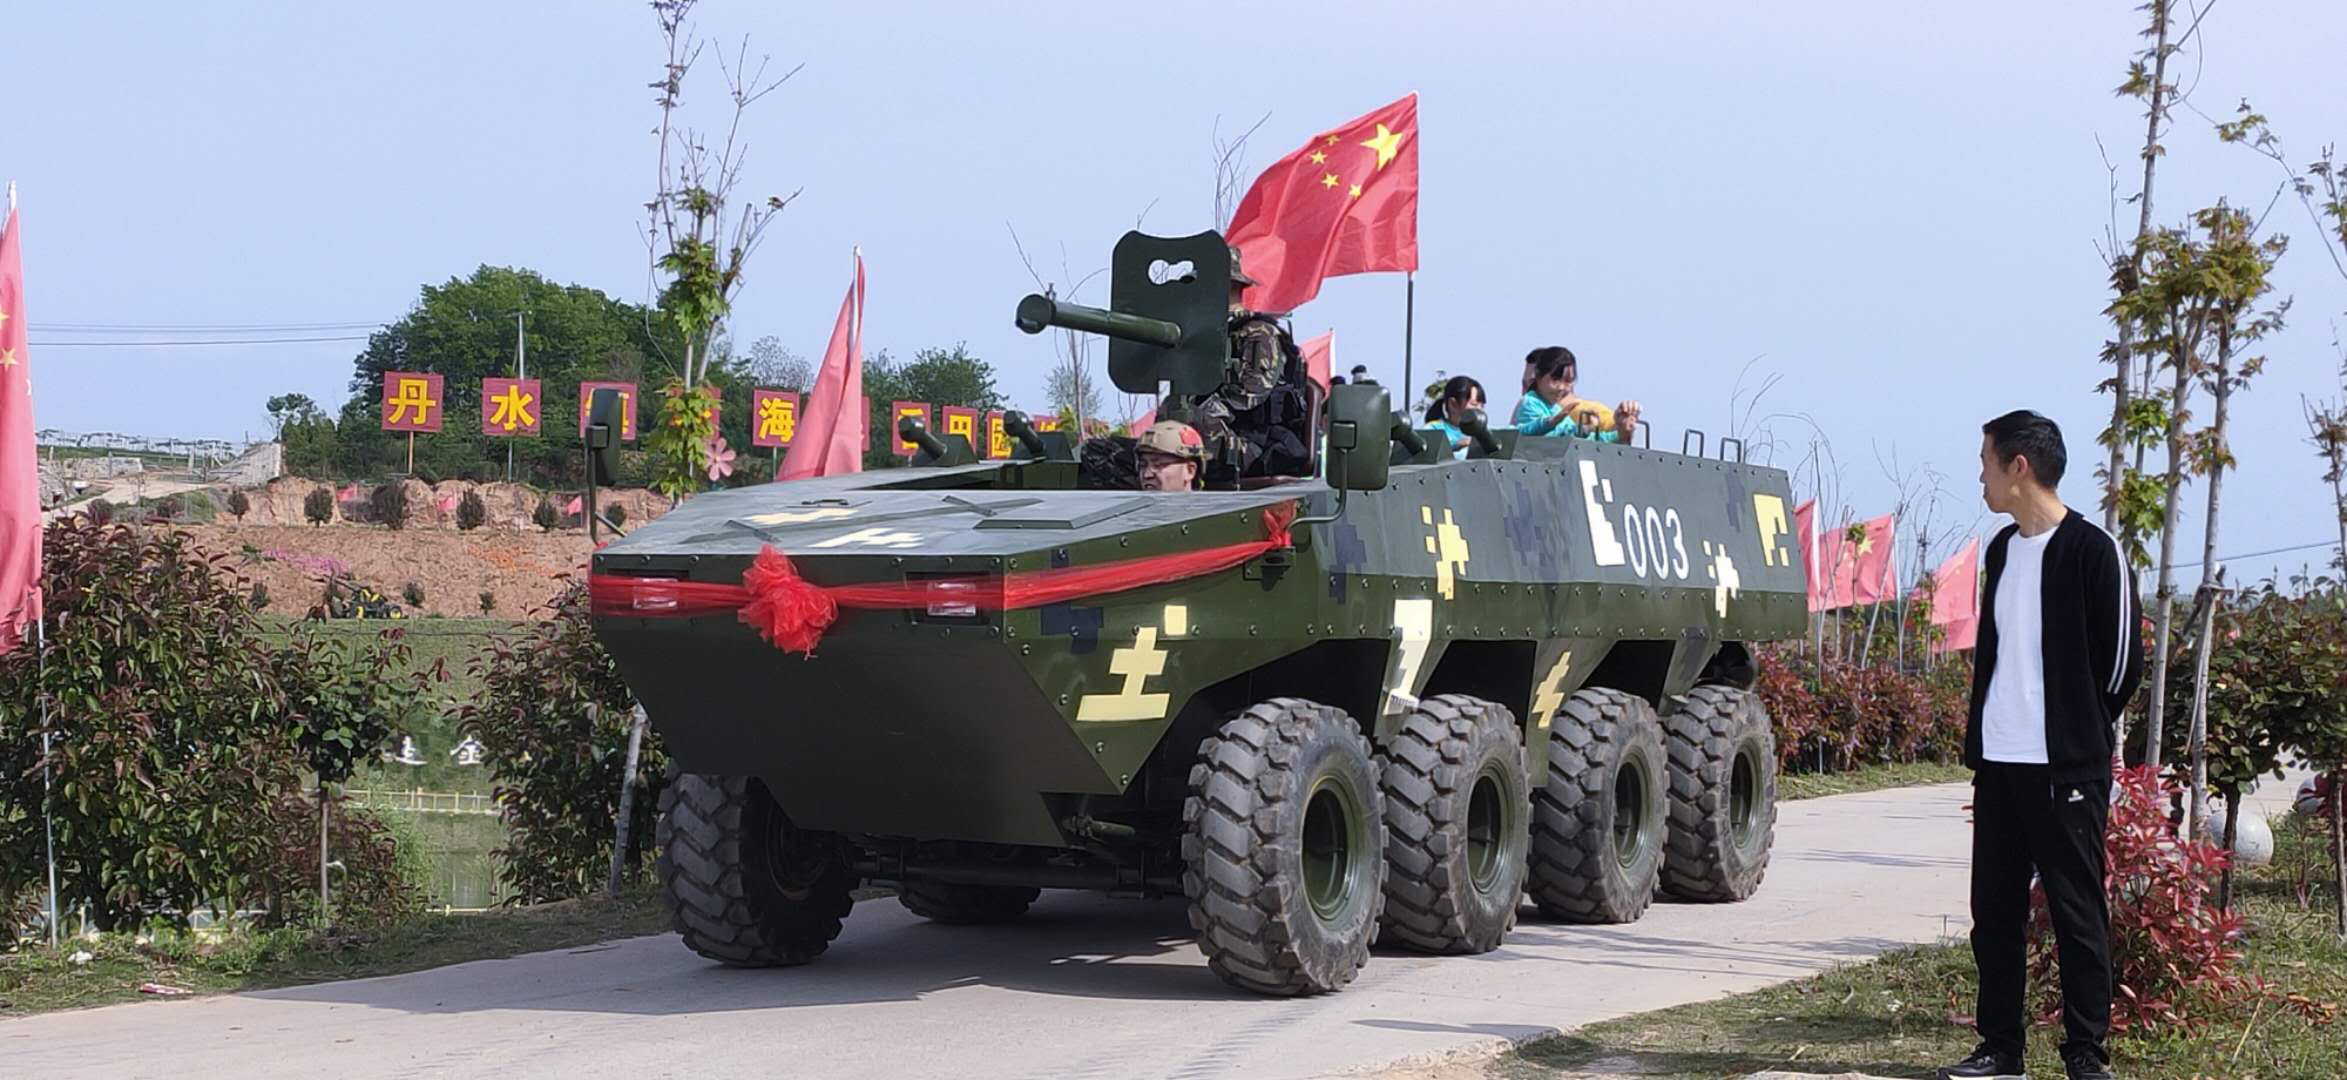 军事模型 大型军模设备 装甲车模型展览装备4